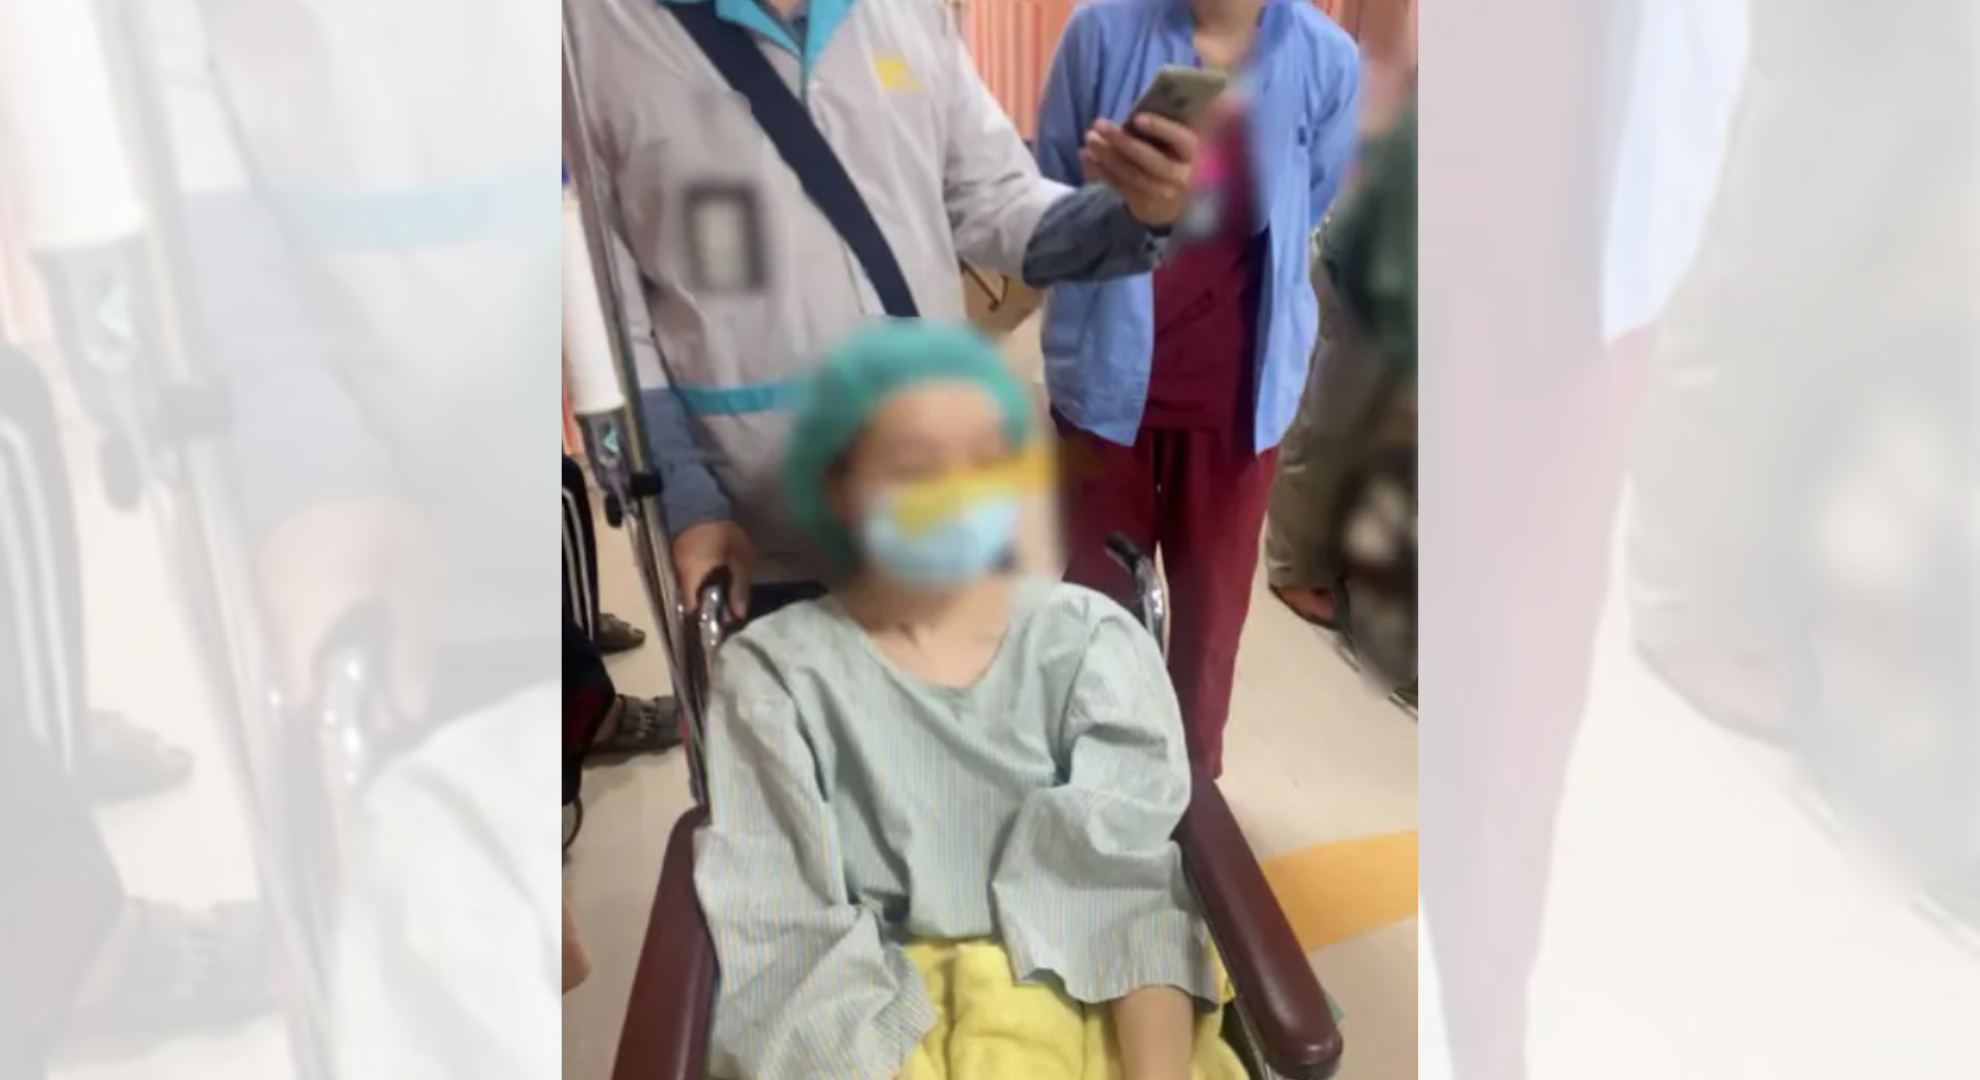 女子遊日突長囊腫掛急診遭拒返台直奔醫院直誇台灣醫療